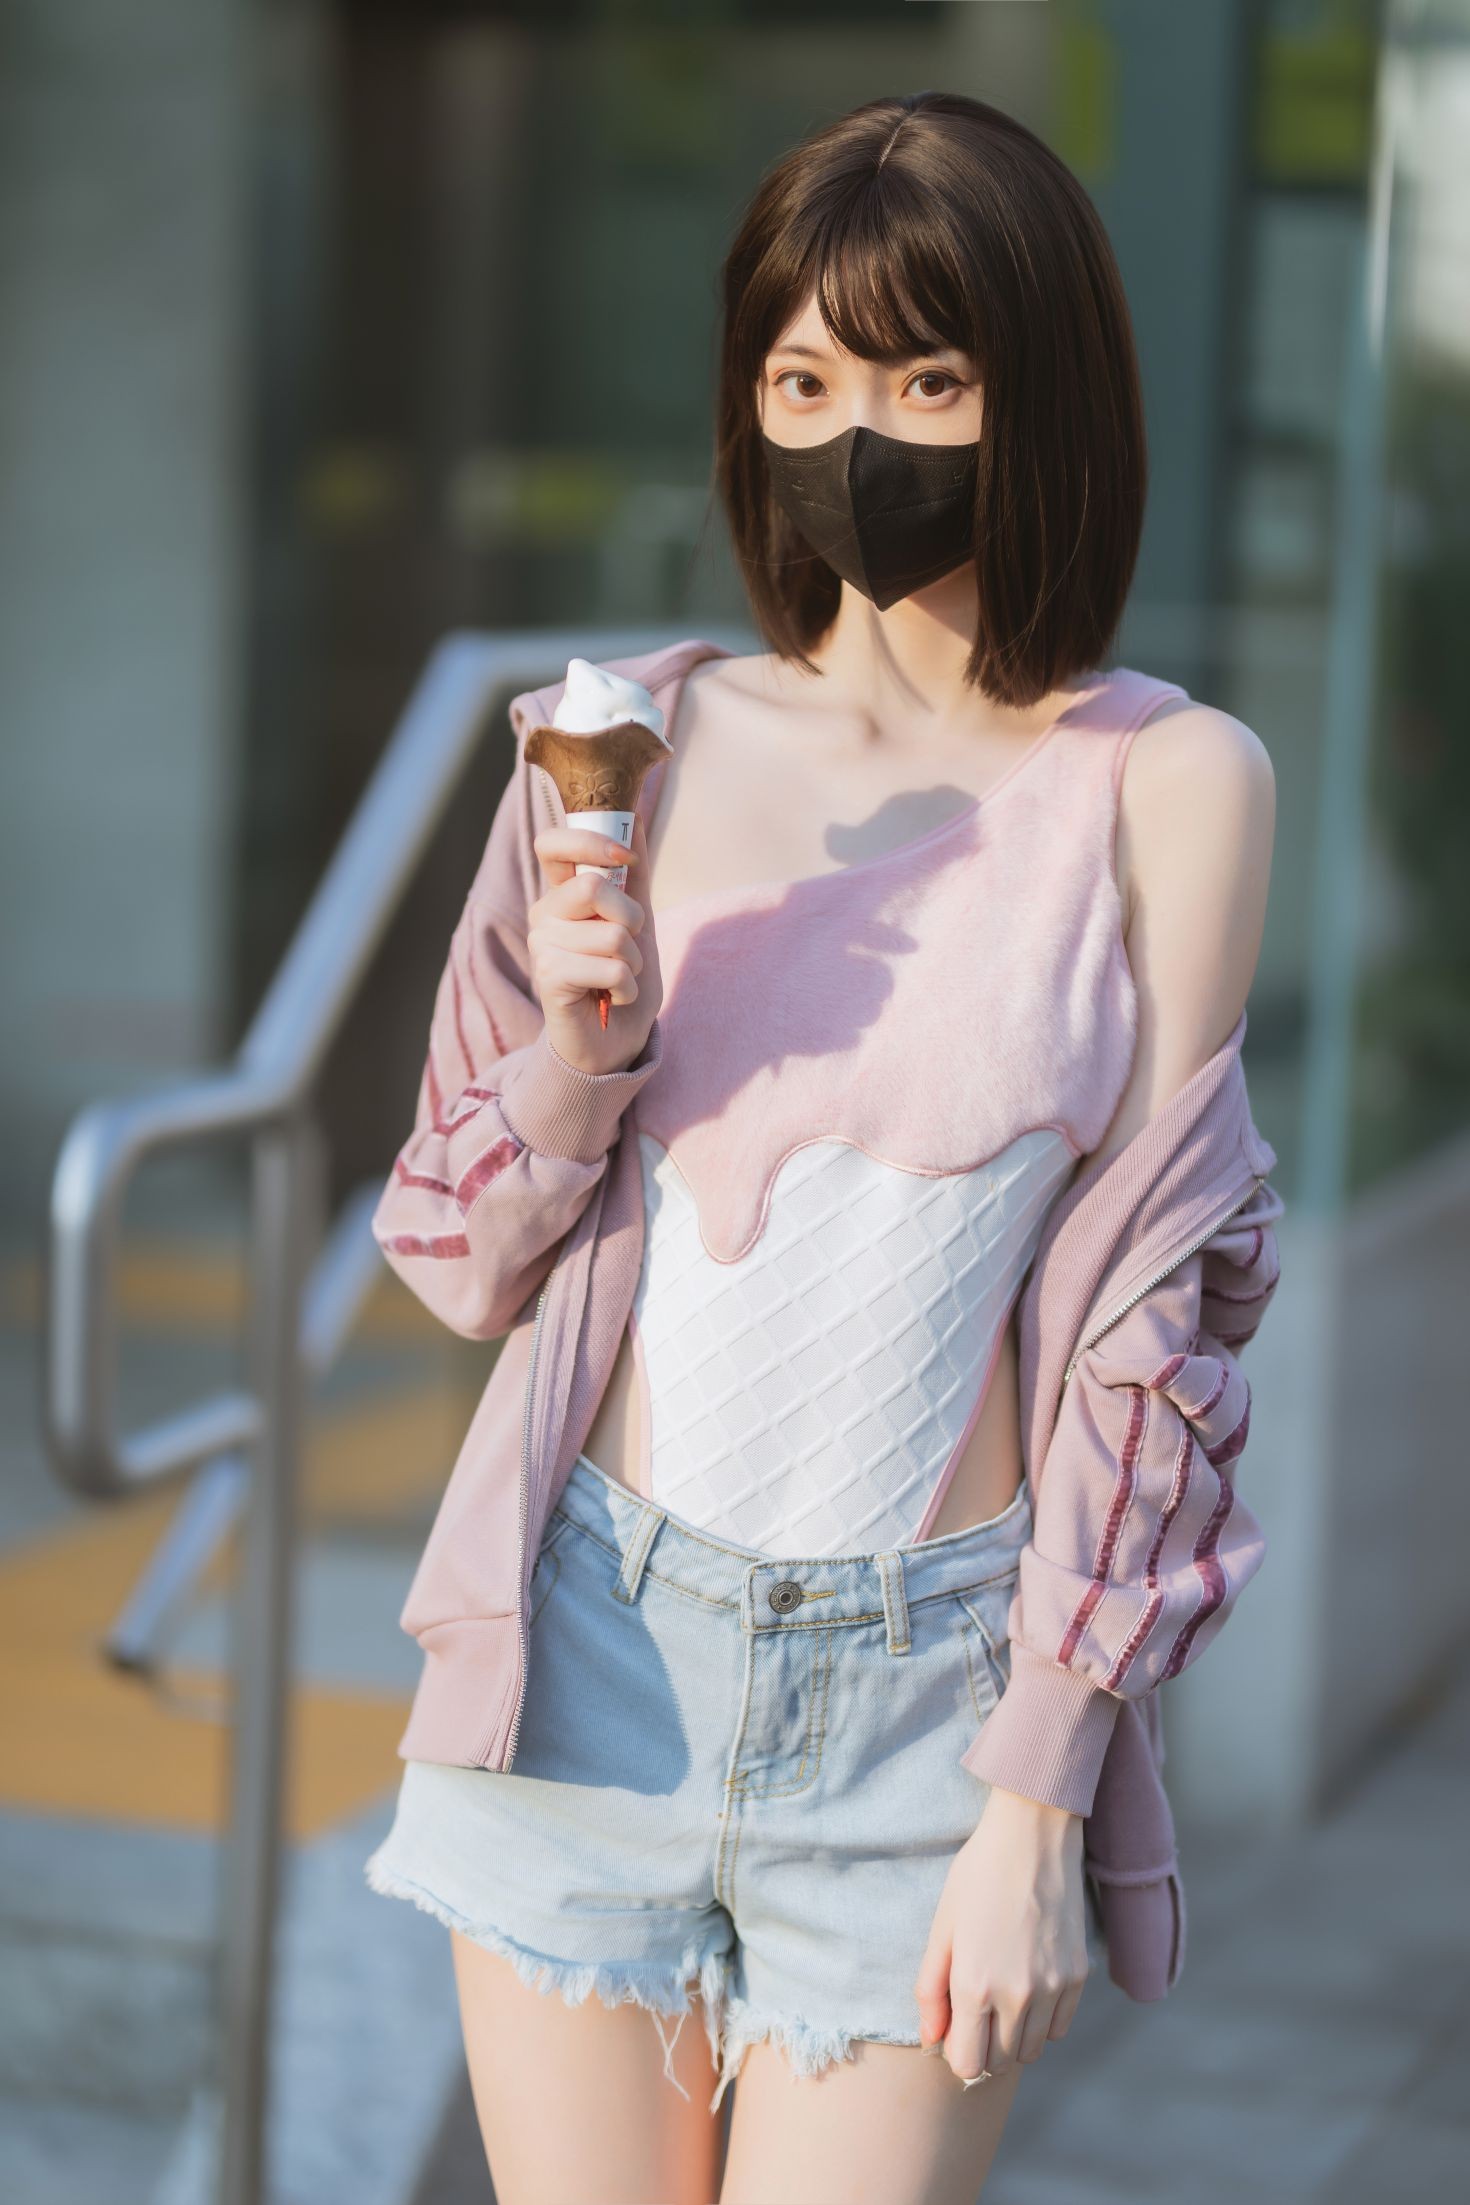 美女动漫博主许岚性感Cosplay写真冰淇淋 (40)